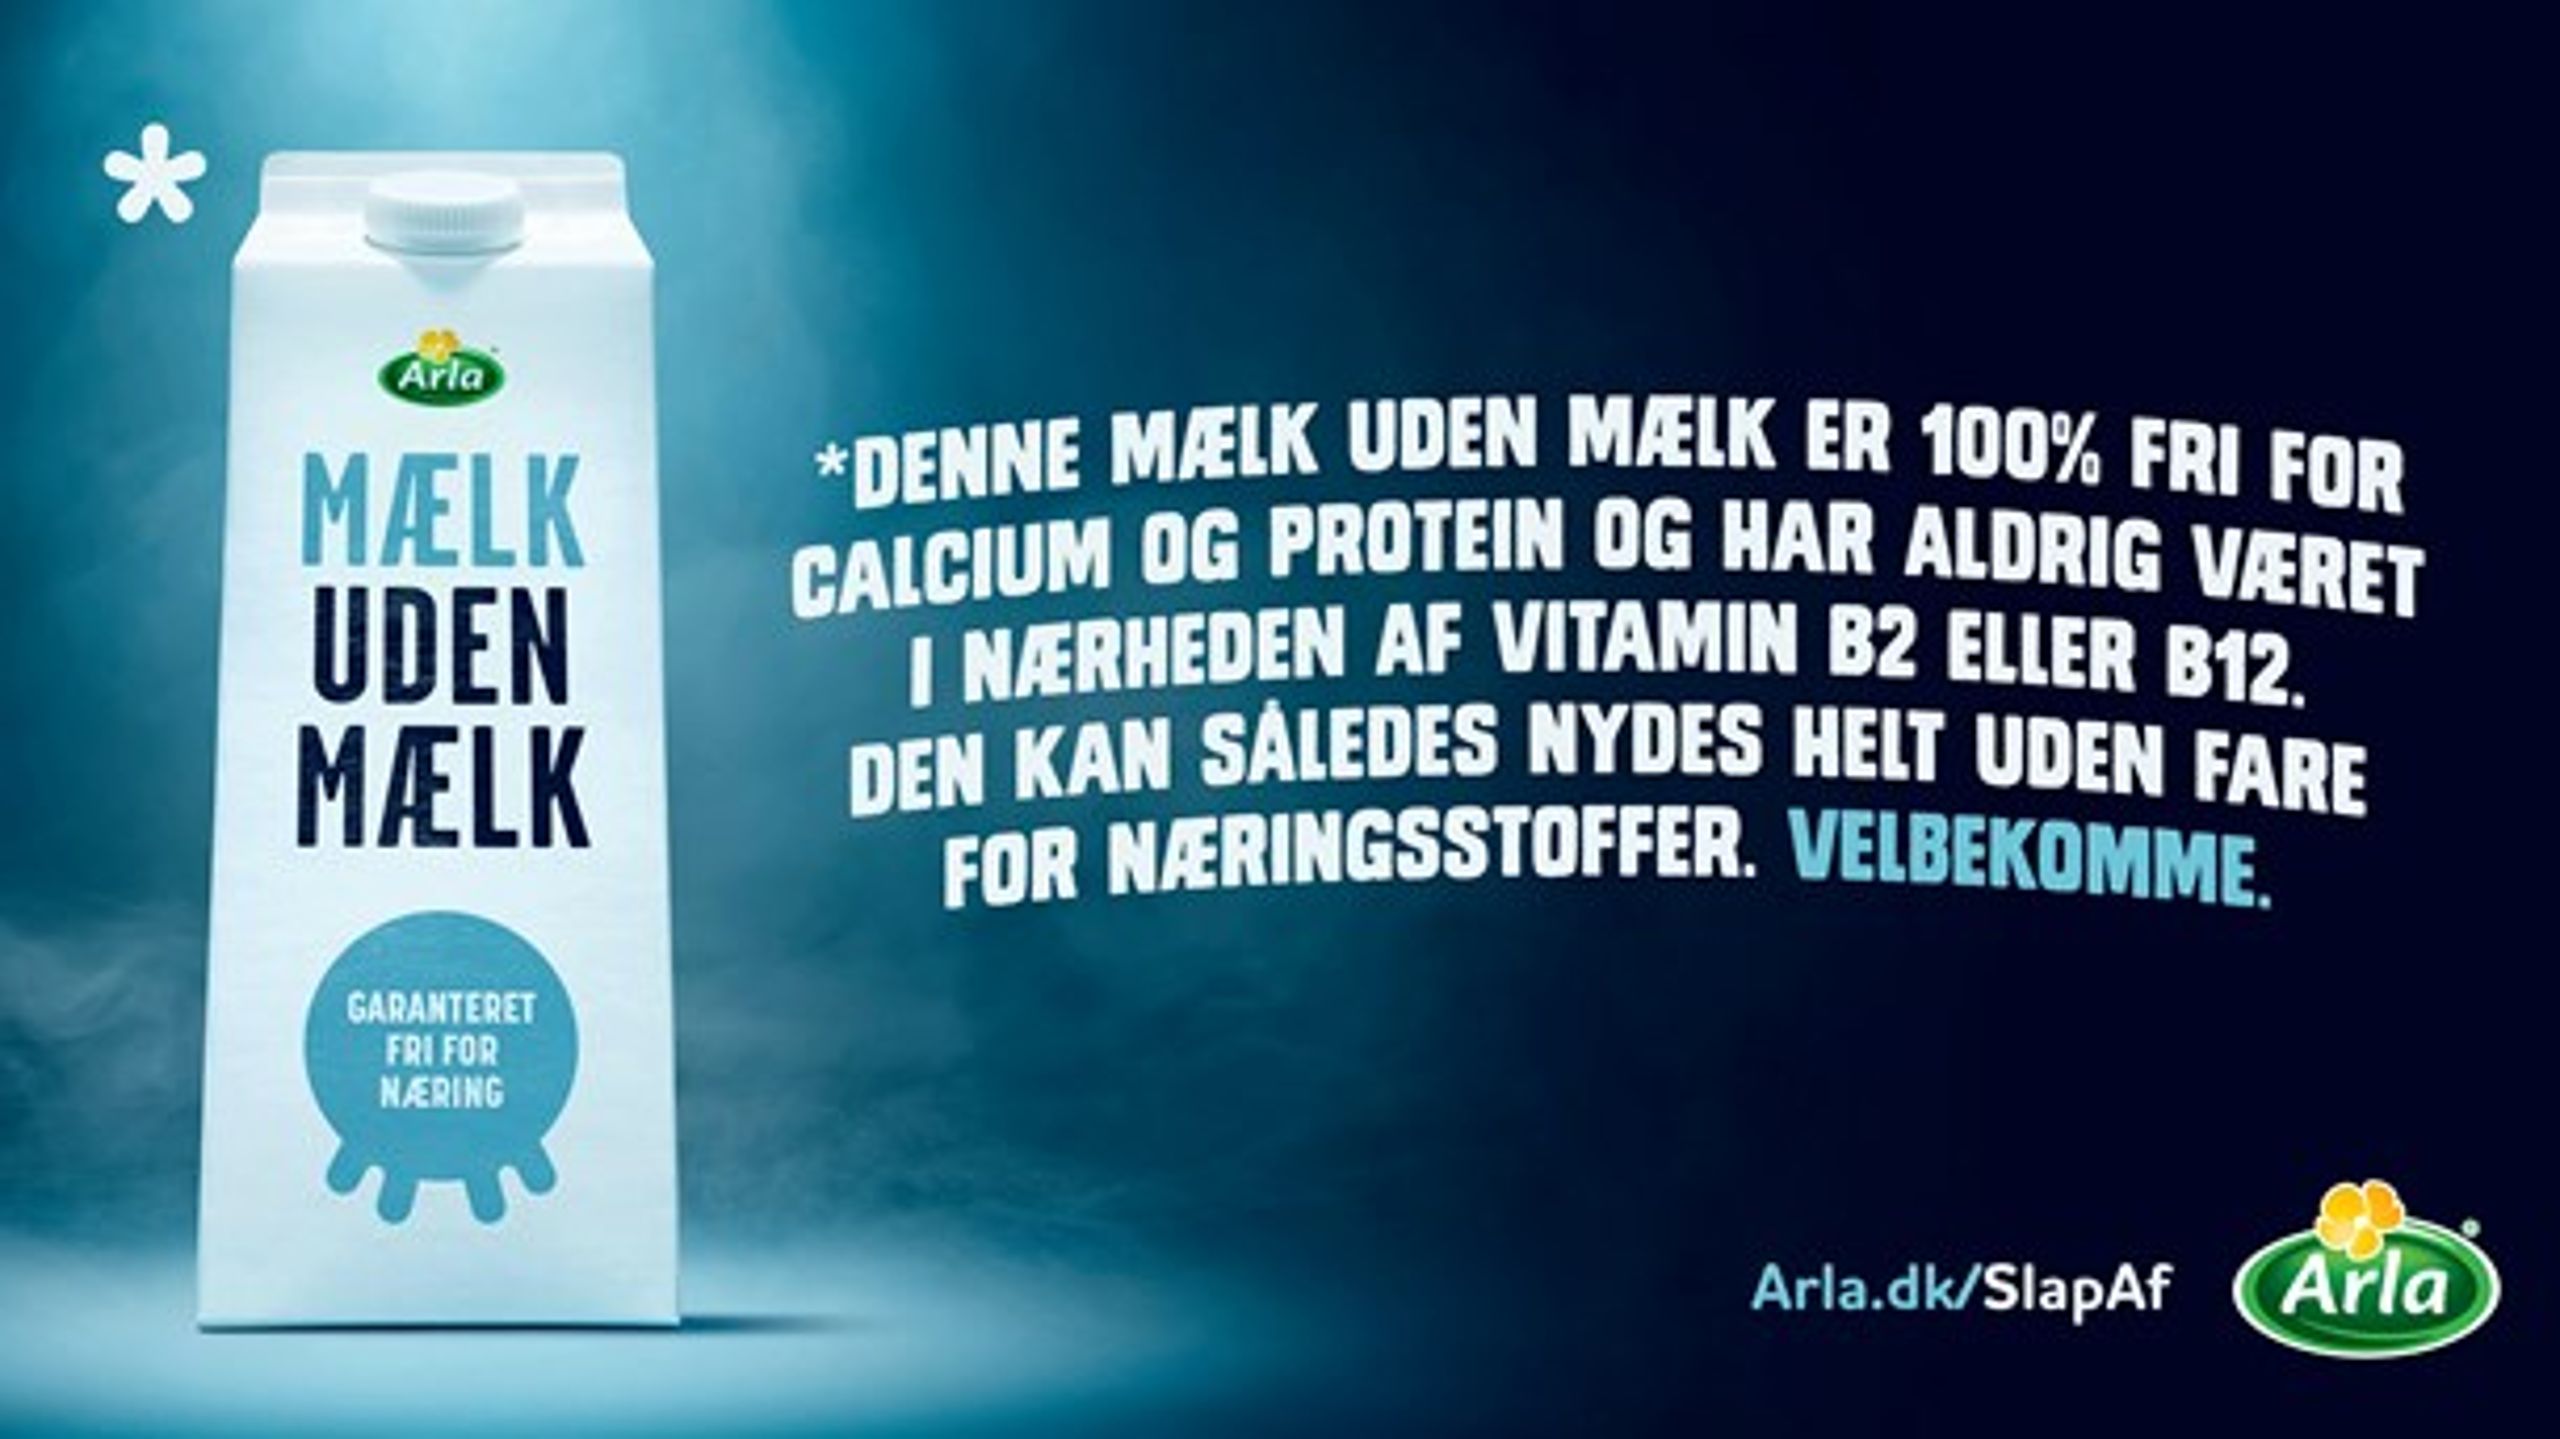 Målet for&nbsp;Arlas nye kampagne 'Mælk uden mælk' er først og fremmest at få gang i en debat om debatten, skriver Jakob Knudsen, landedirektør i Arla Danmark.